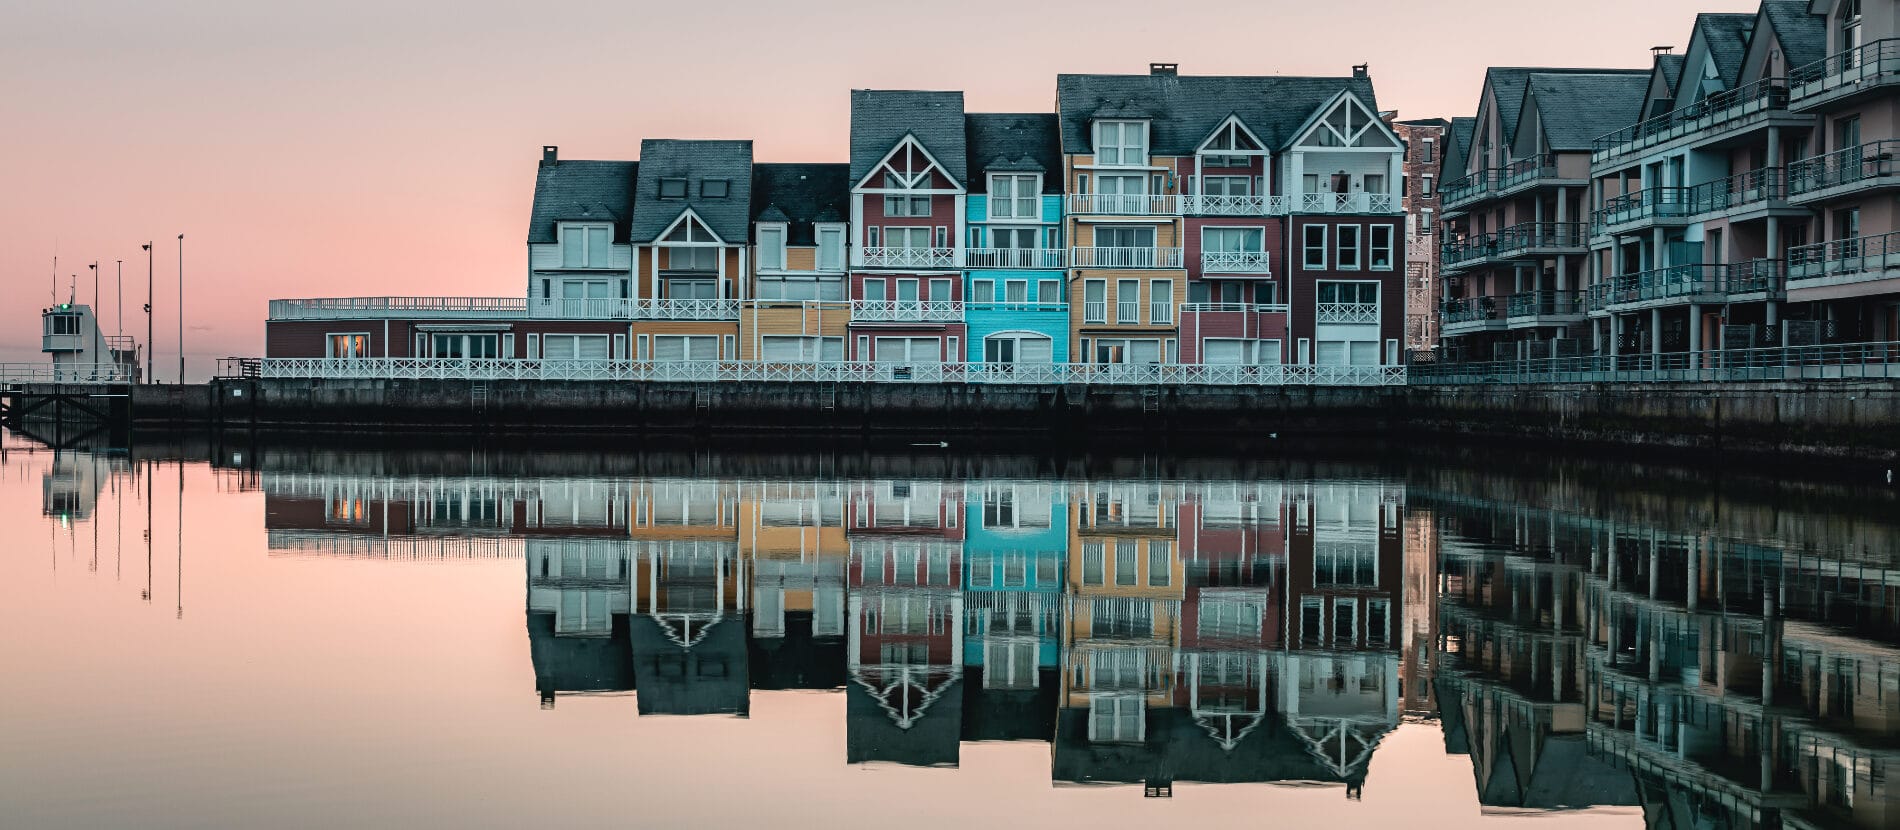 Maisons colorées au bord de l'eau